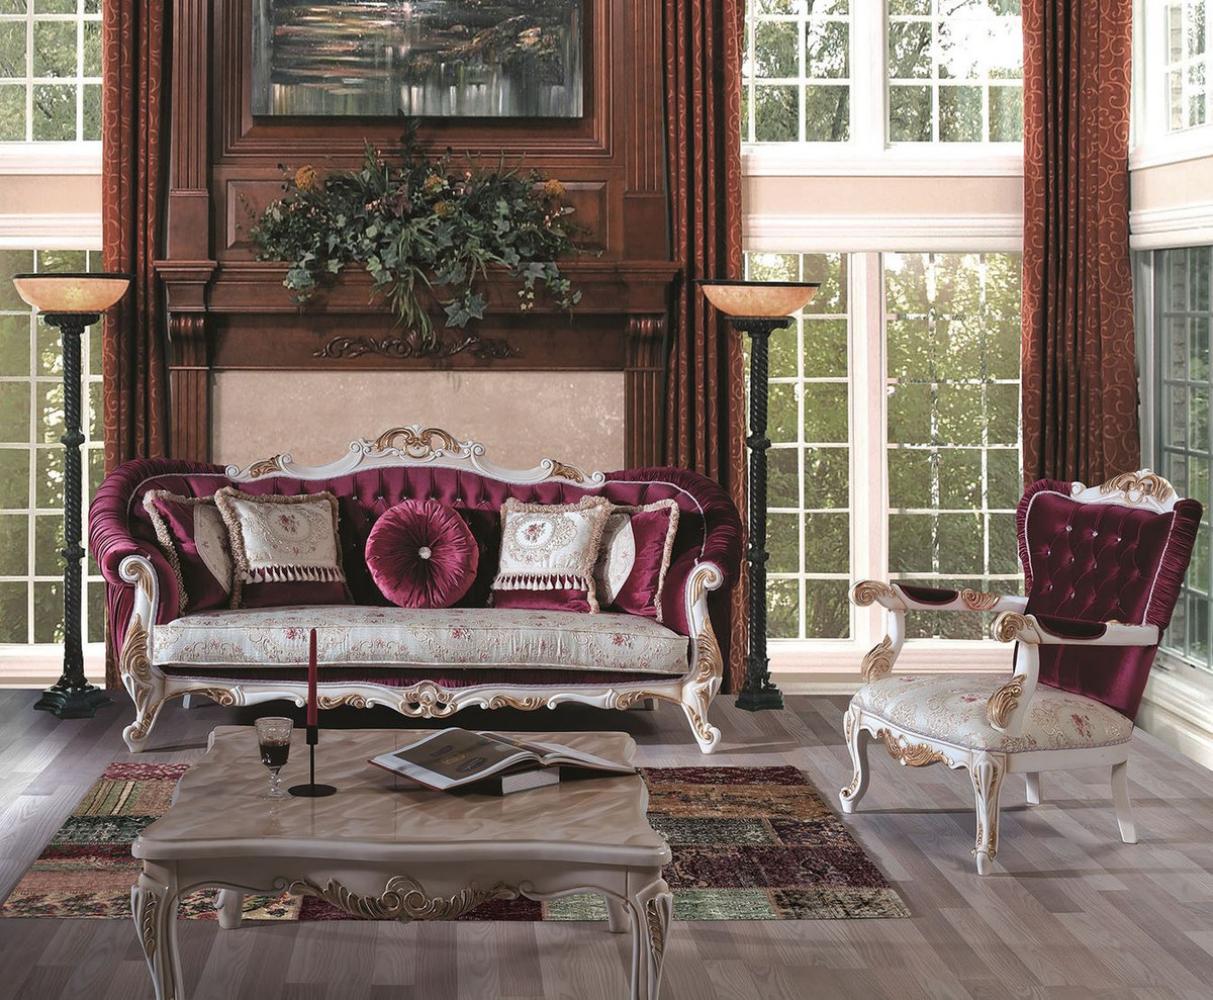 Casa Padrino Luxus Barock Wohnzimmer Set Purpur / Creme / Gold - 2 Sofas & 2 Sessel & 1 Couchtisch - Prunkvolle Möbel im Barockstil Bild 1